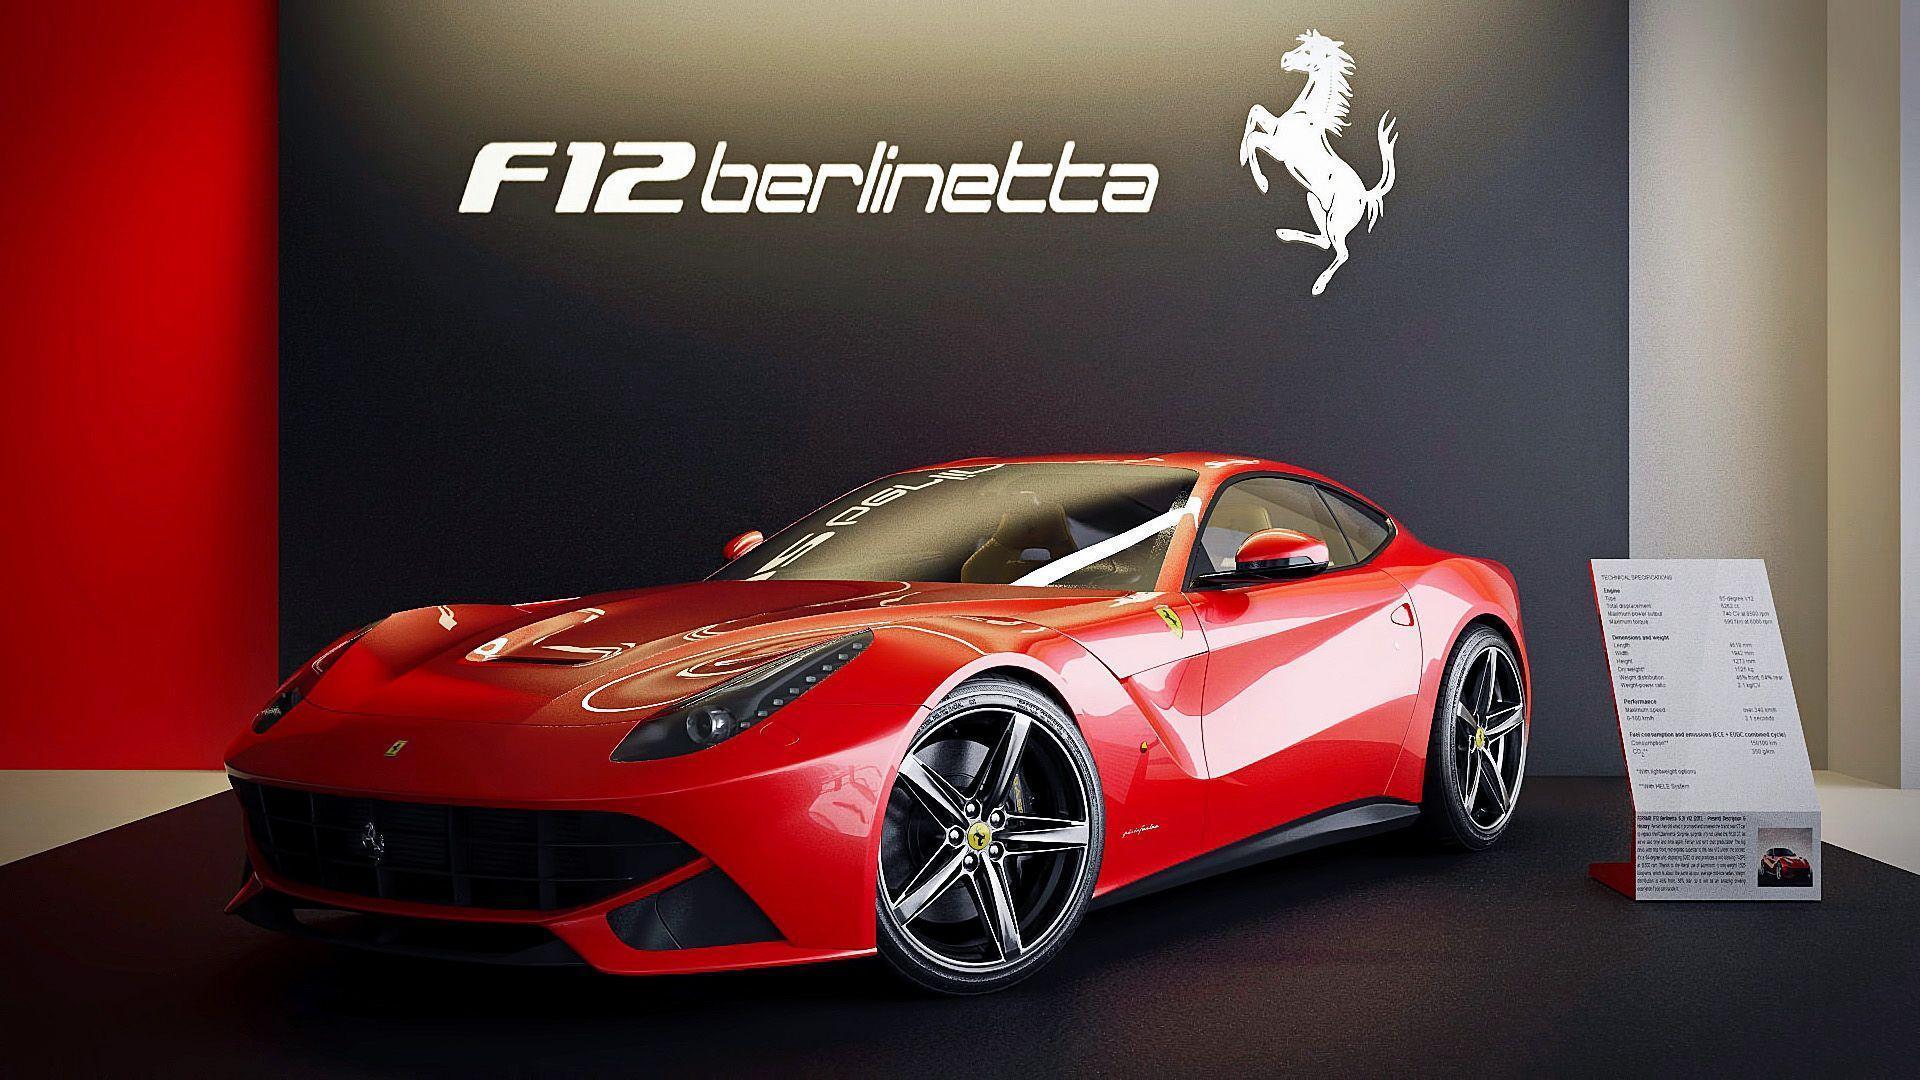 Cool Ferrari F12 Berlinetta Wallpapers